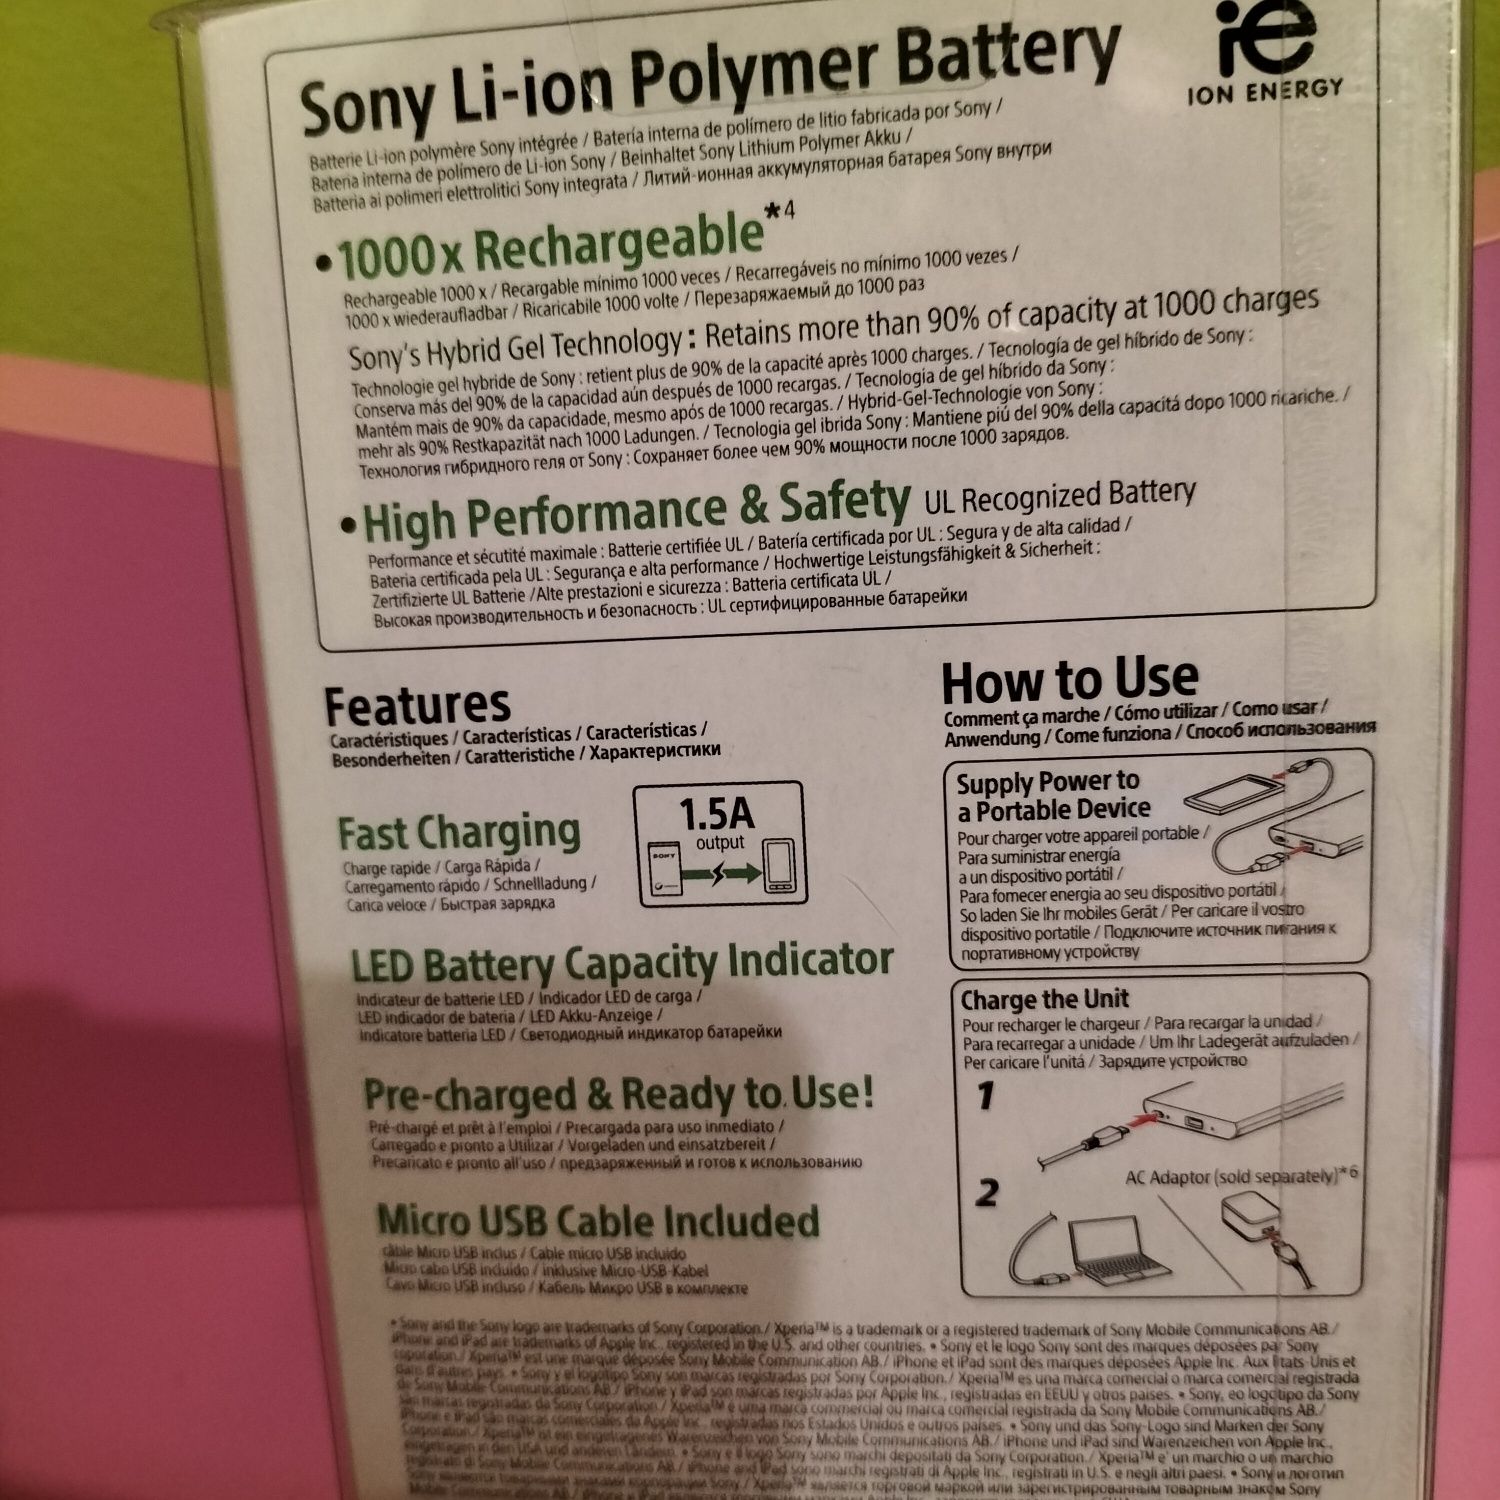 Power Bank Sony 5000mAh nowy